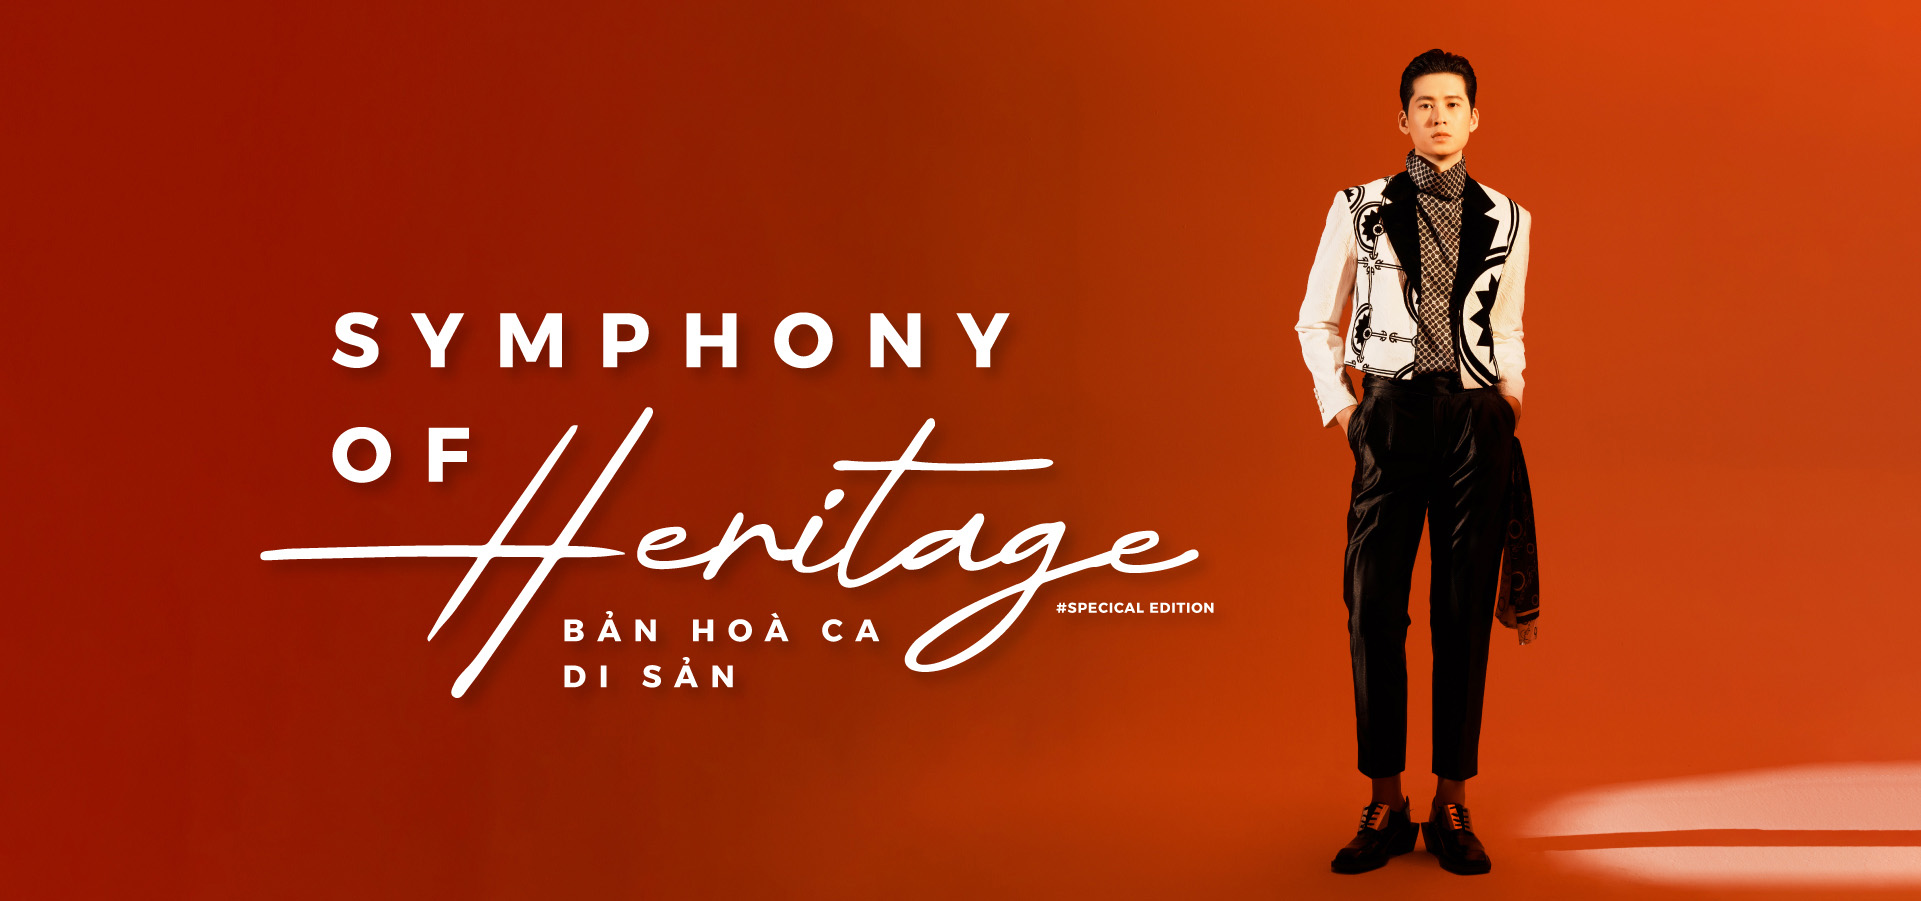 KV-Symphony of Heritage